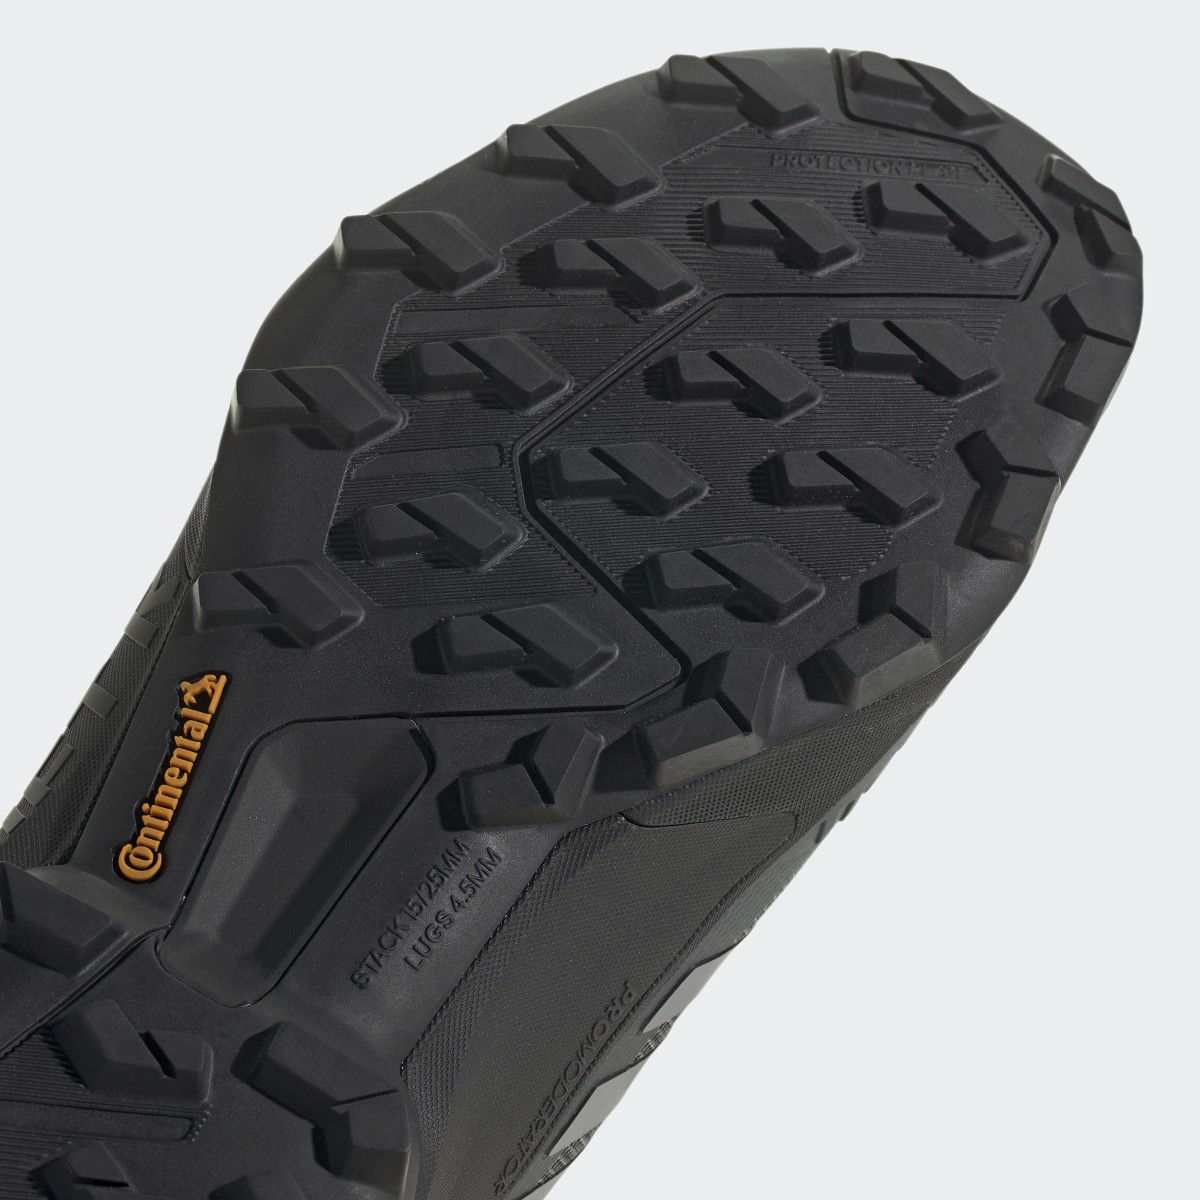 Adidas Sapatilhas de Caminhada GORE-TEX TERREX Swift R3. 10